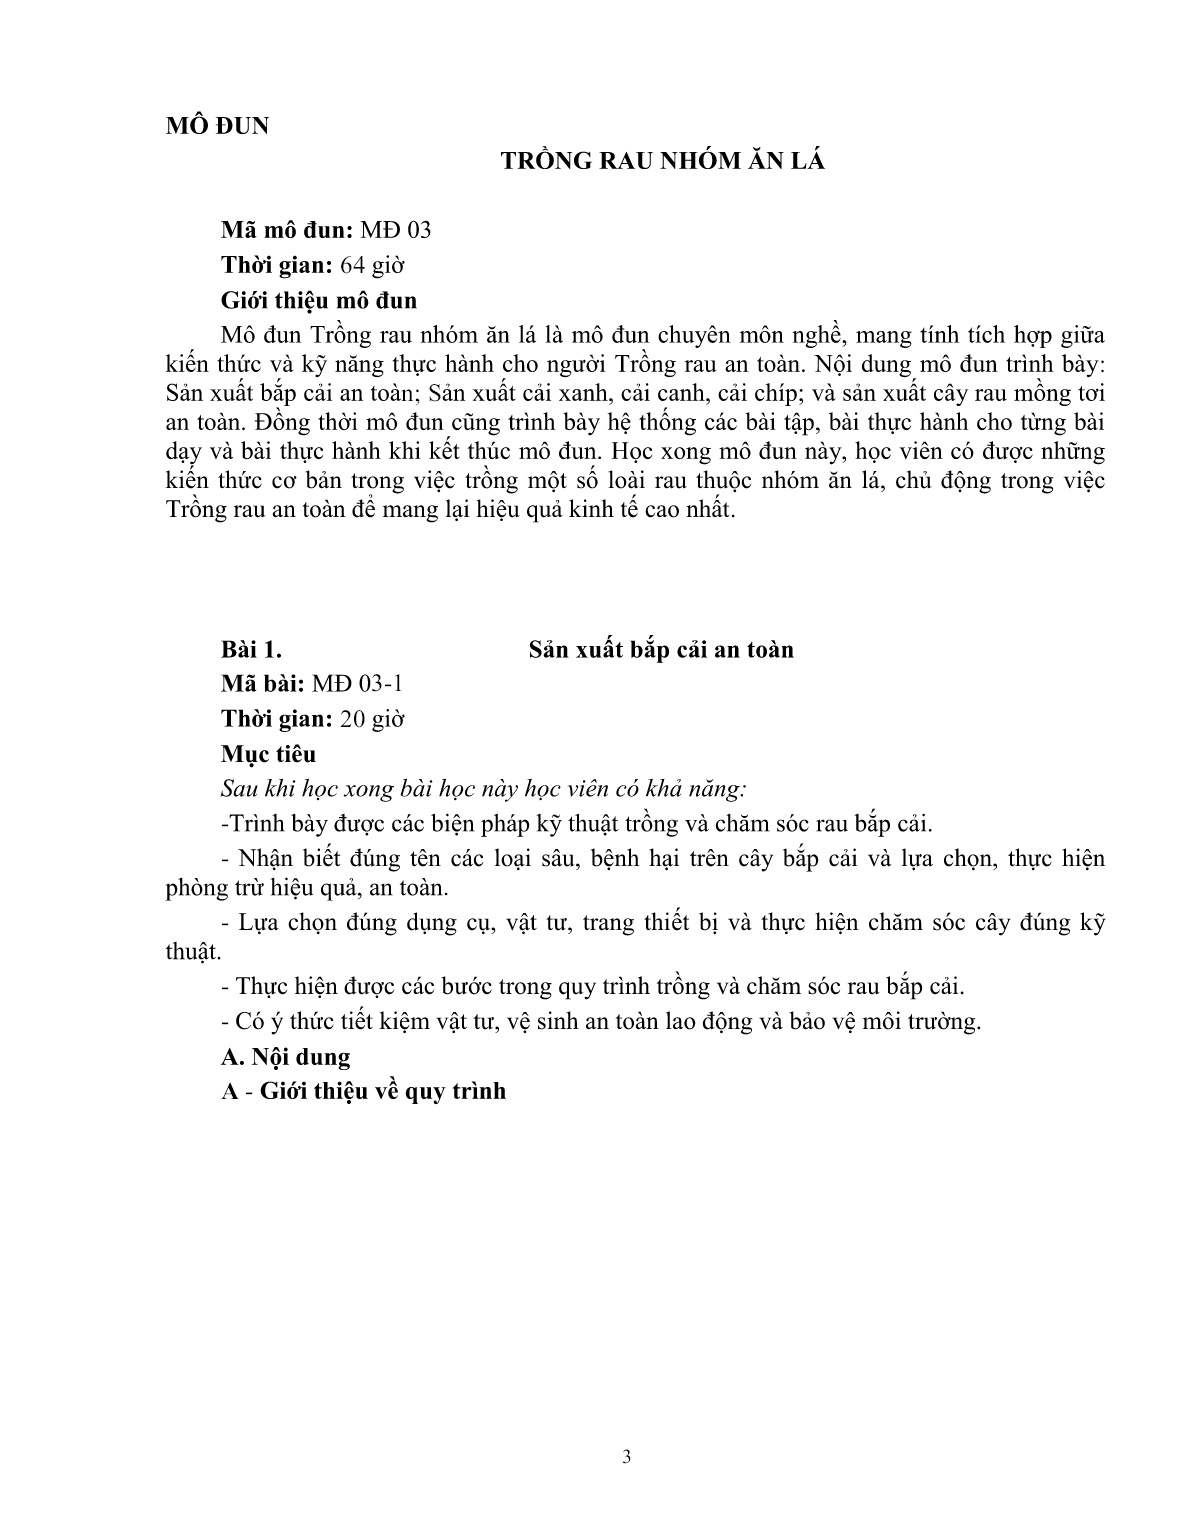 Giáo trình mô đun Trồng rau nhóm ăn lá (Trình độ: Đào tạo dưới 03 tháng) trang 4